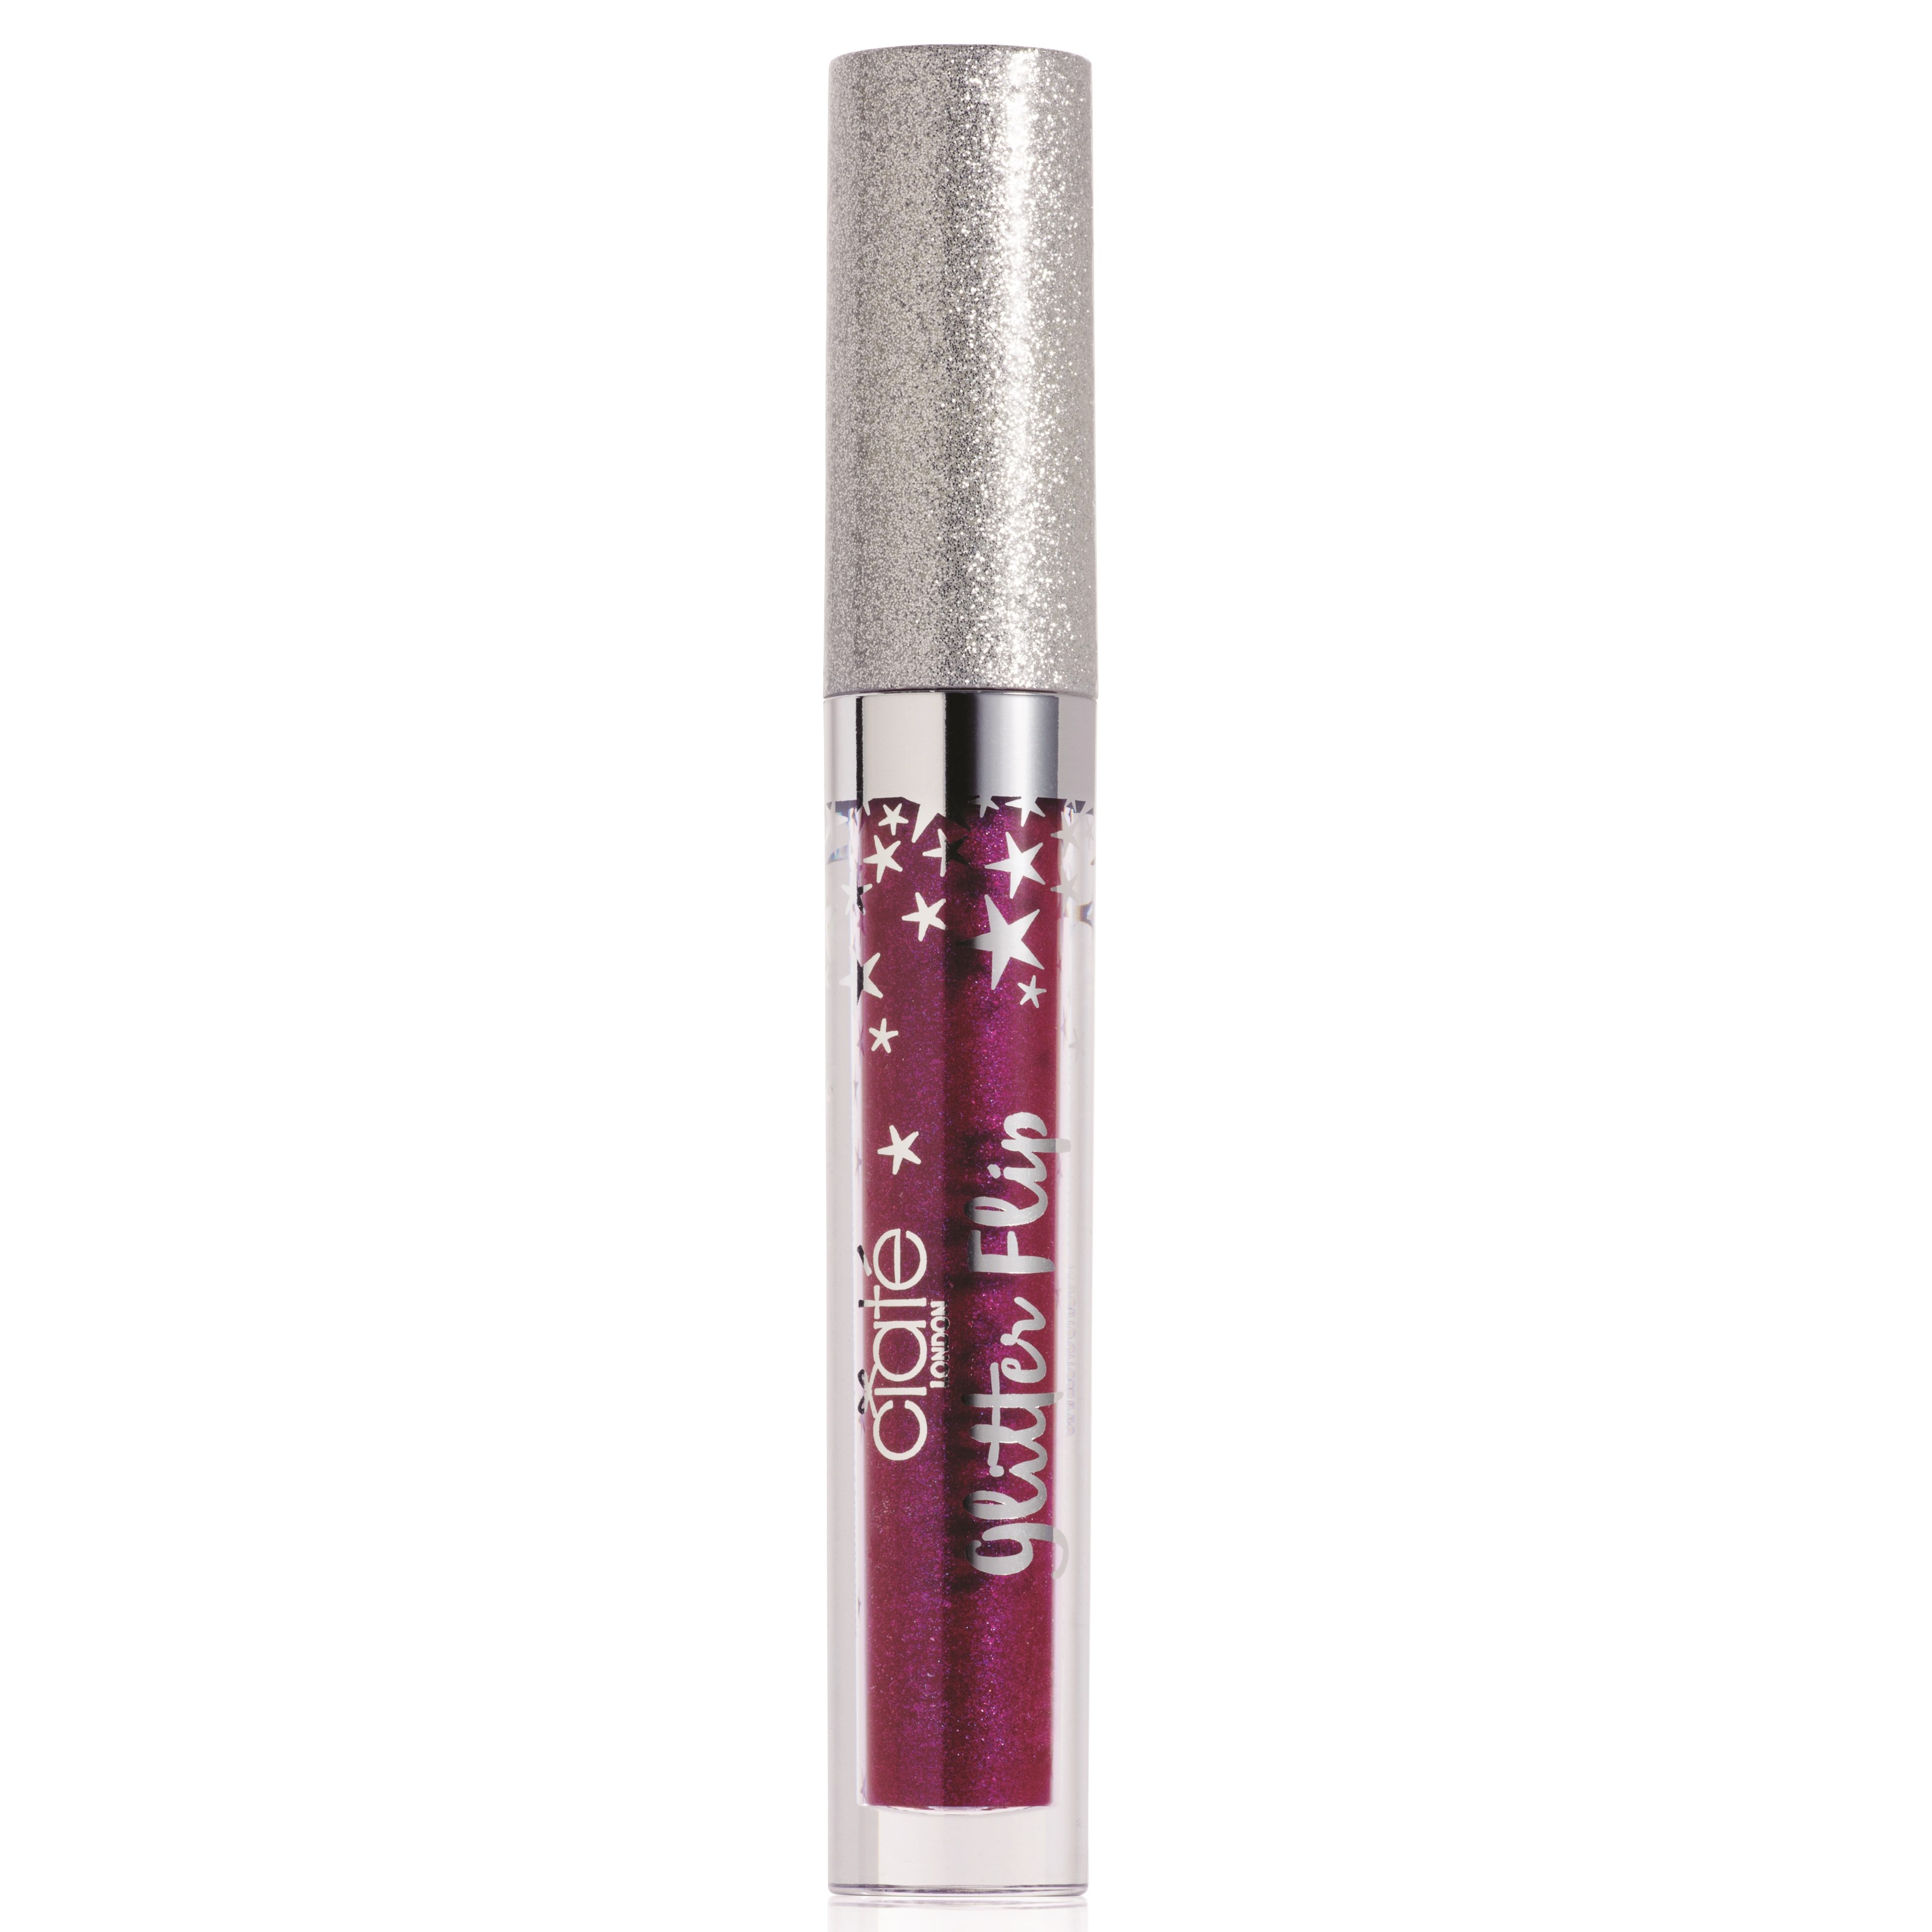 Ciaté Glitter Flip Transforming Lipstick Surreal Royal Purple Sur